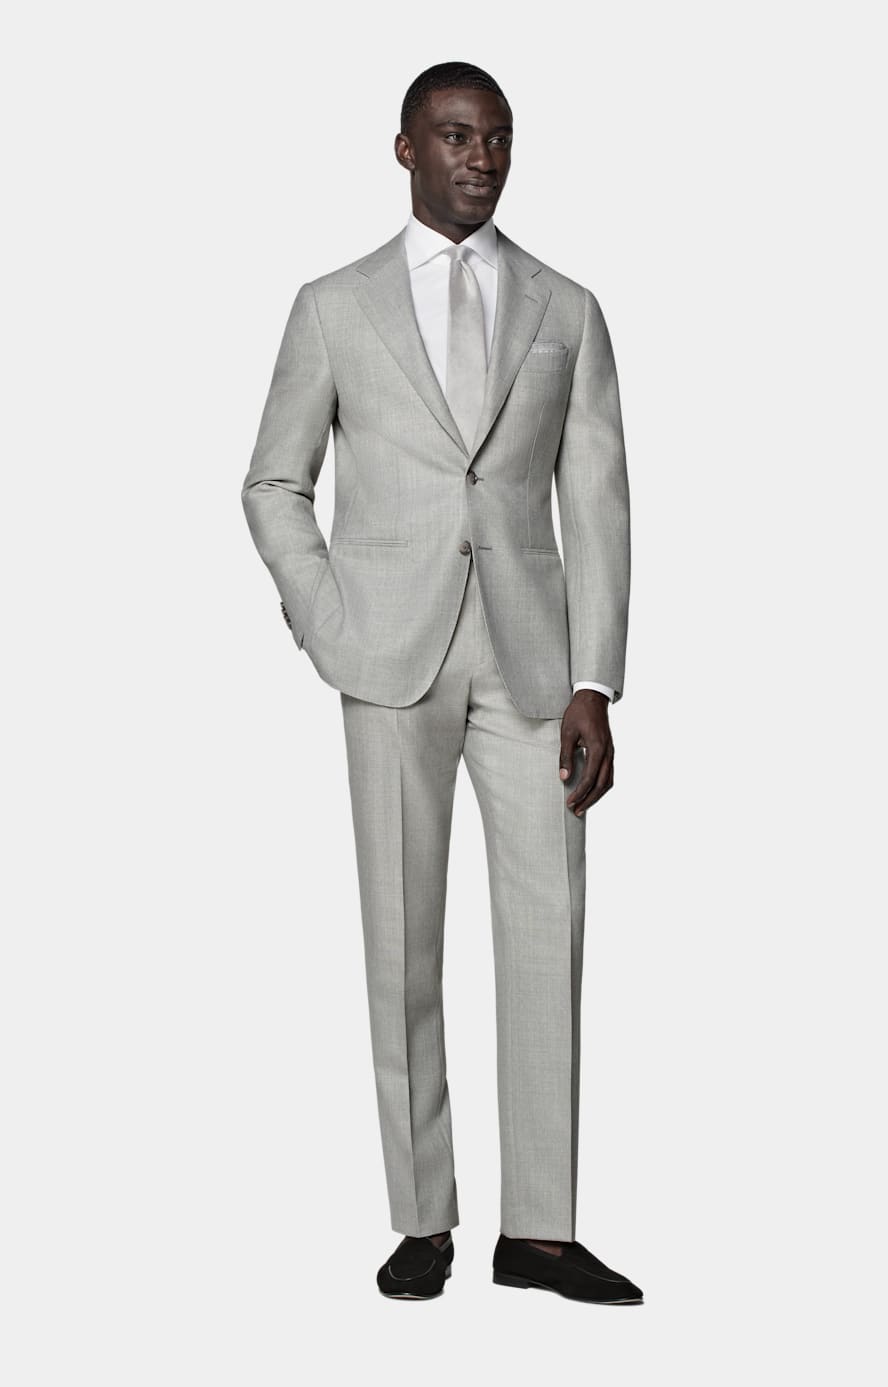 Havana ljusgrå kostym med tailored fit